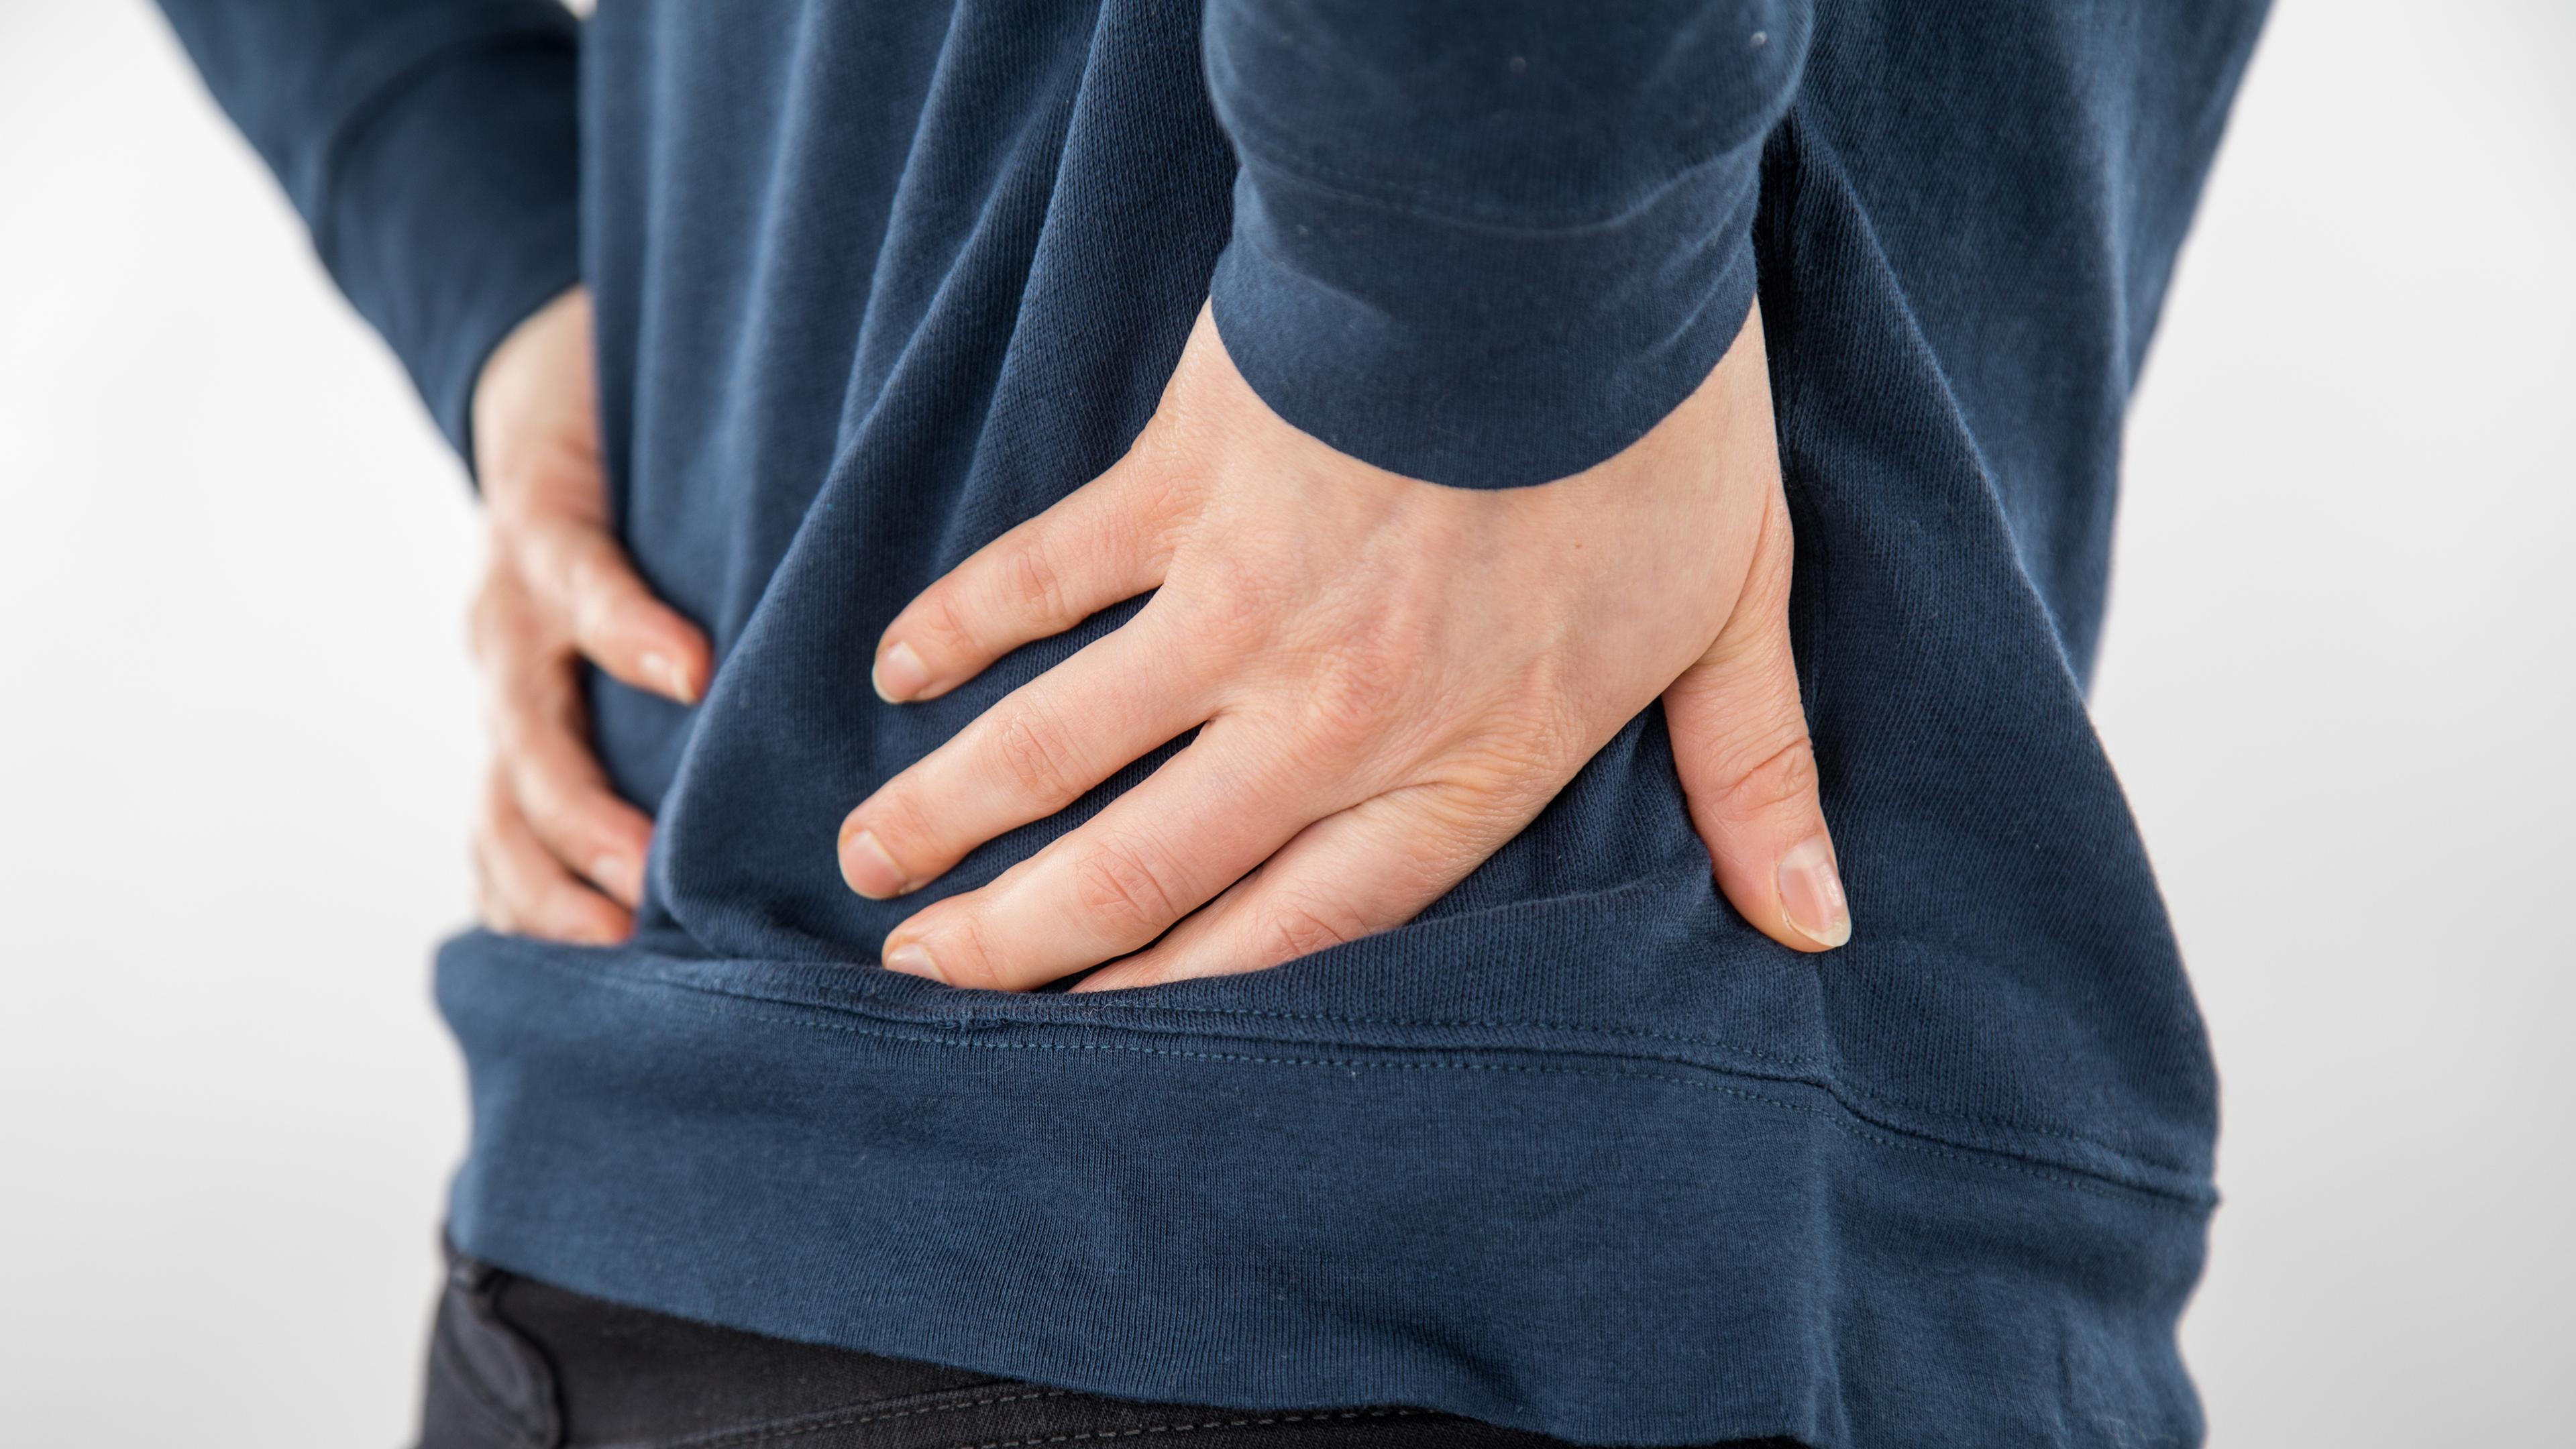 Eine Person leidet an Rückenschmerzen und hält sich die Hände an den unteren Rücken.